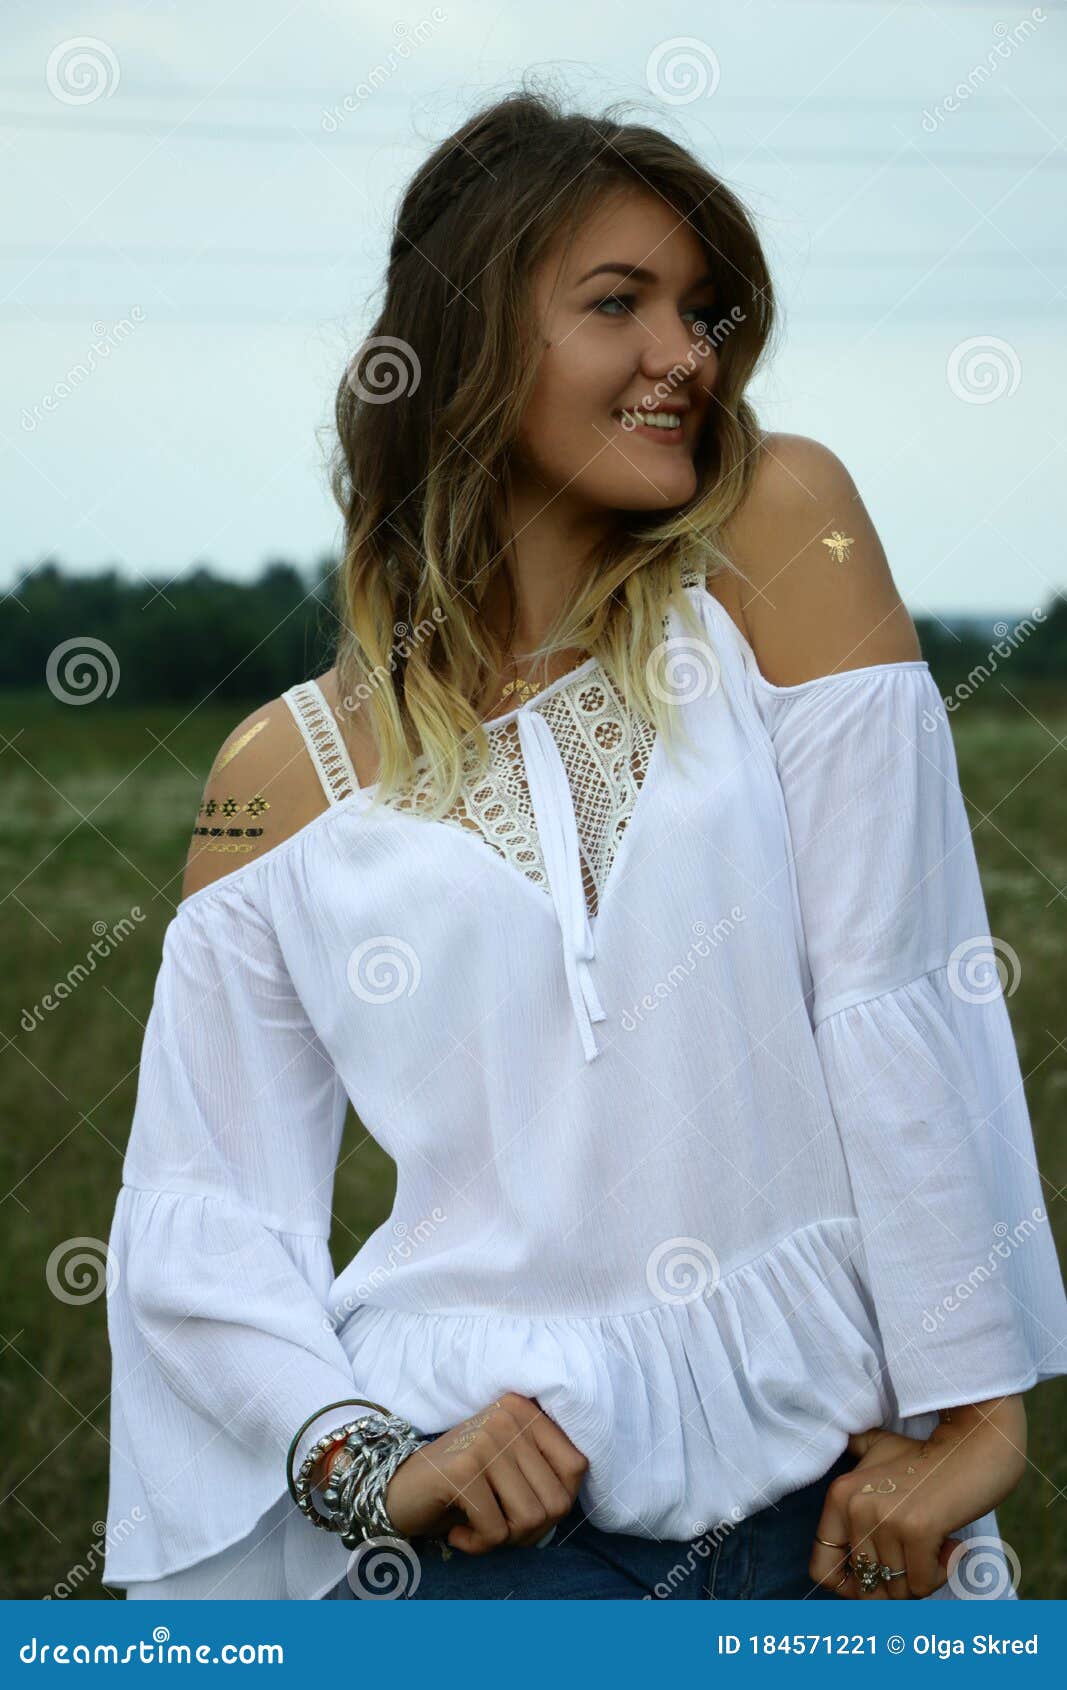 Retrato De Una Coqueta Y Hermosa Mujer Con Blusa Blanca En El Campo. Tatuaje Dibujos De La Carrocería. Hippie. Imagen de archivo - Imagen de modelo, cosmético: 184571221